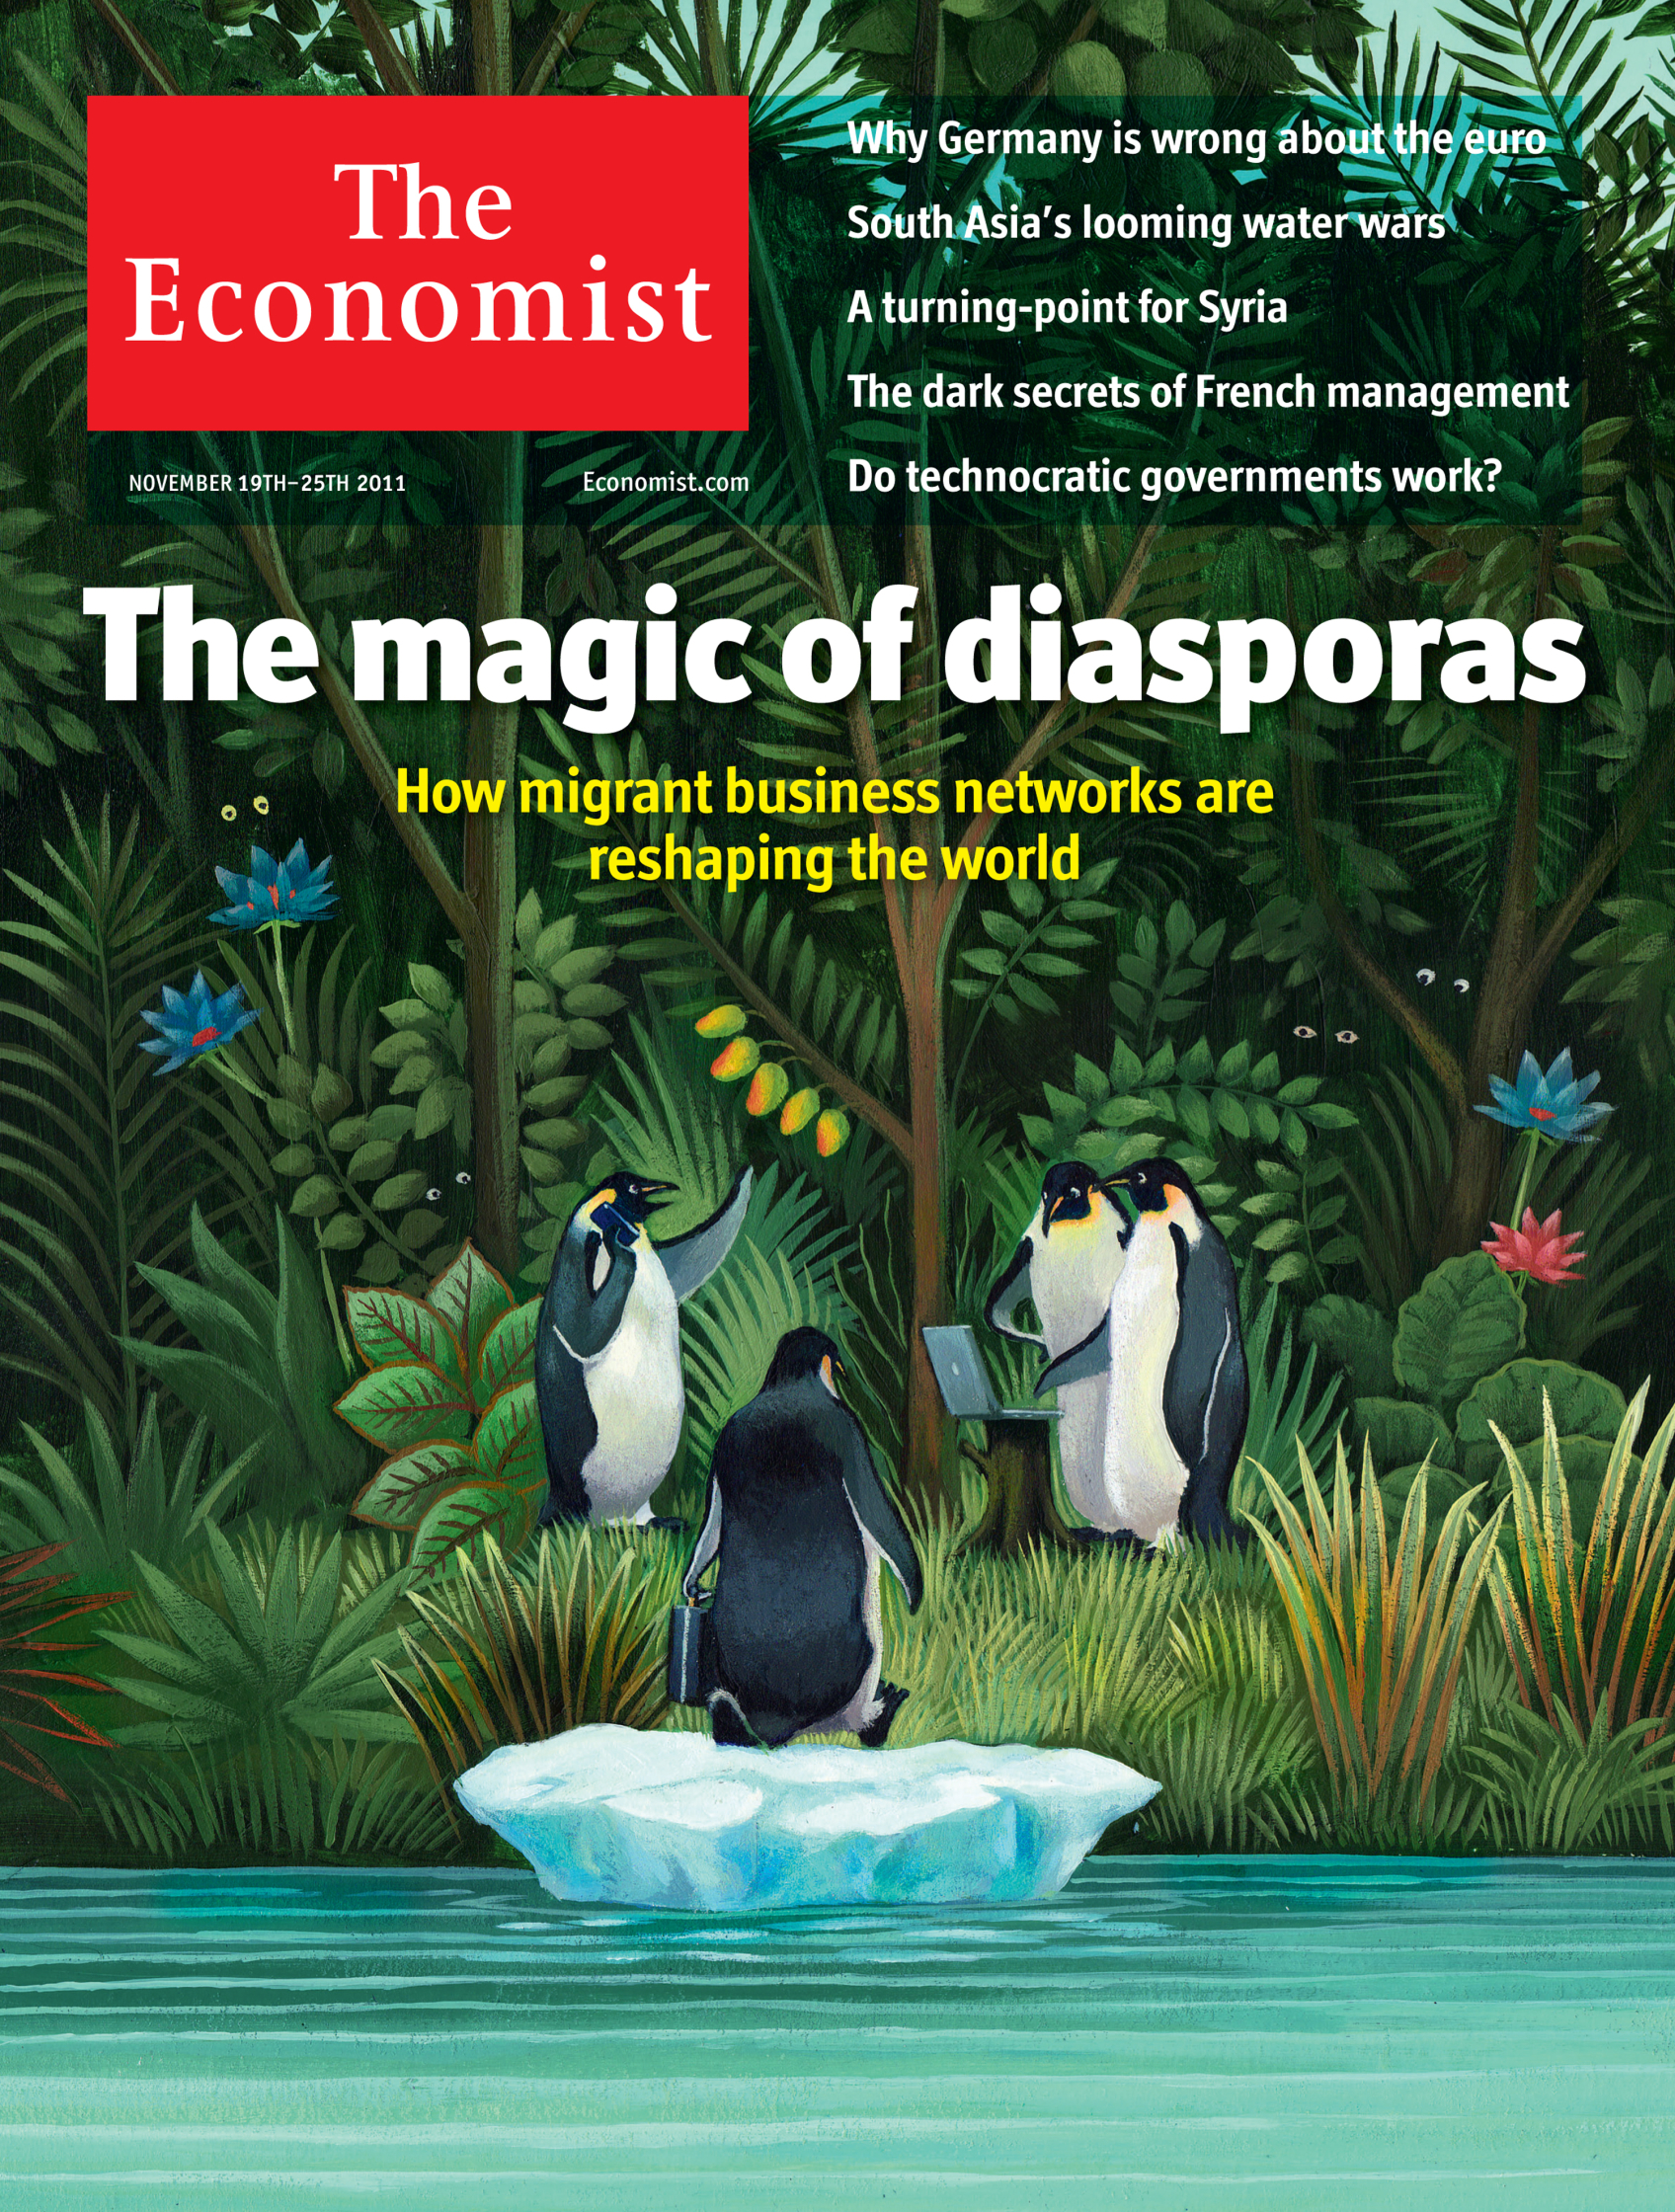 Penguins Magic of Diasporas / The Economist